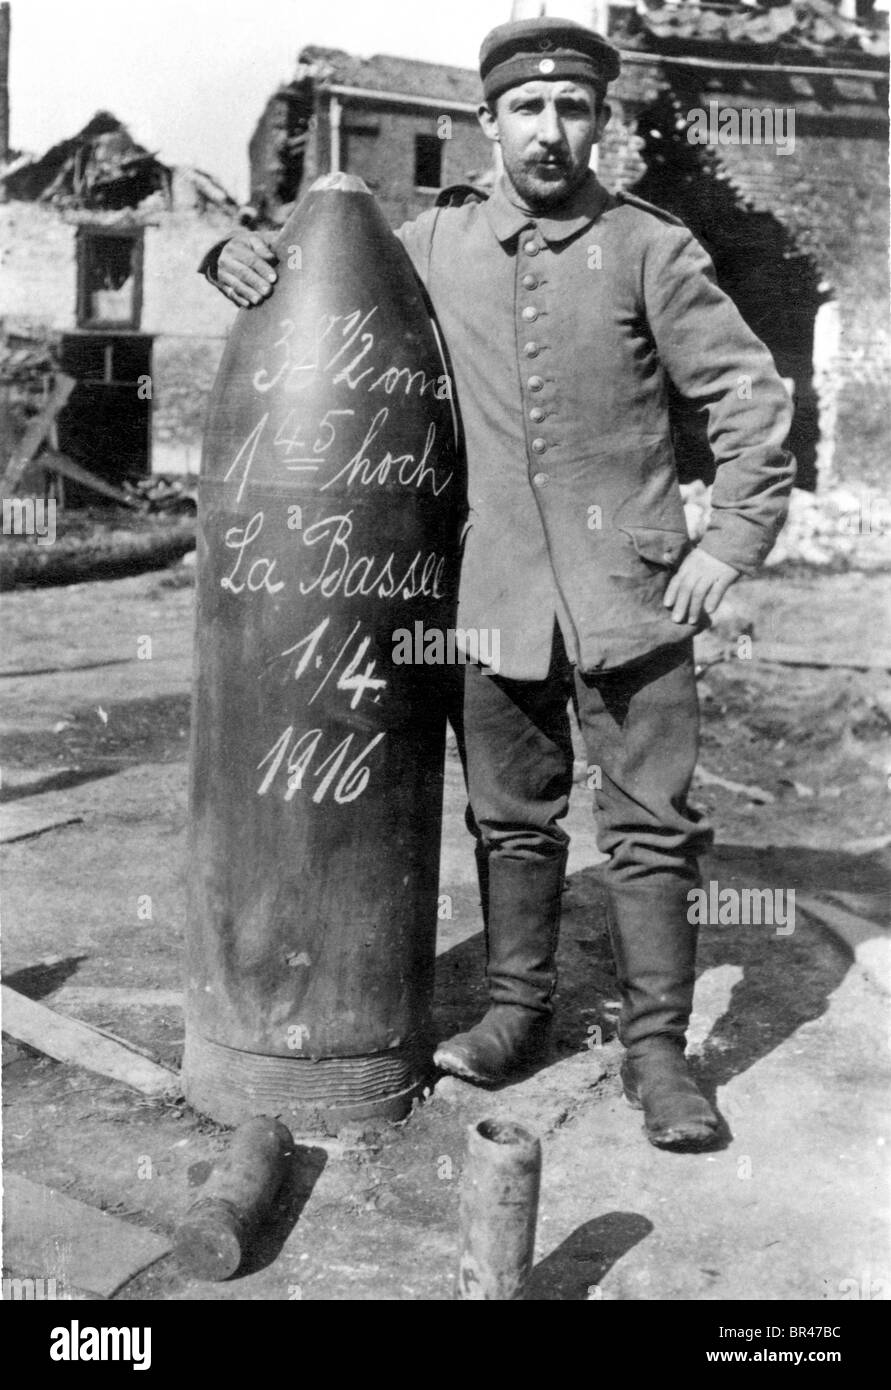 Immagine storica, soldato in piedi accanto a una bomba, ca. 1916 Foto Stock